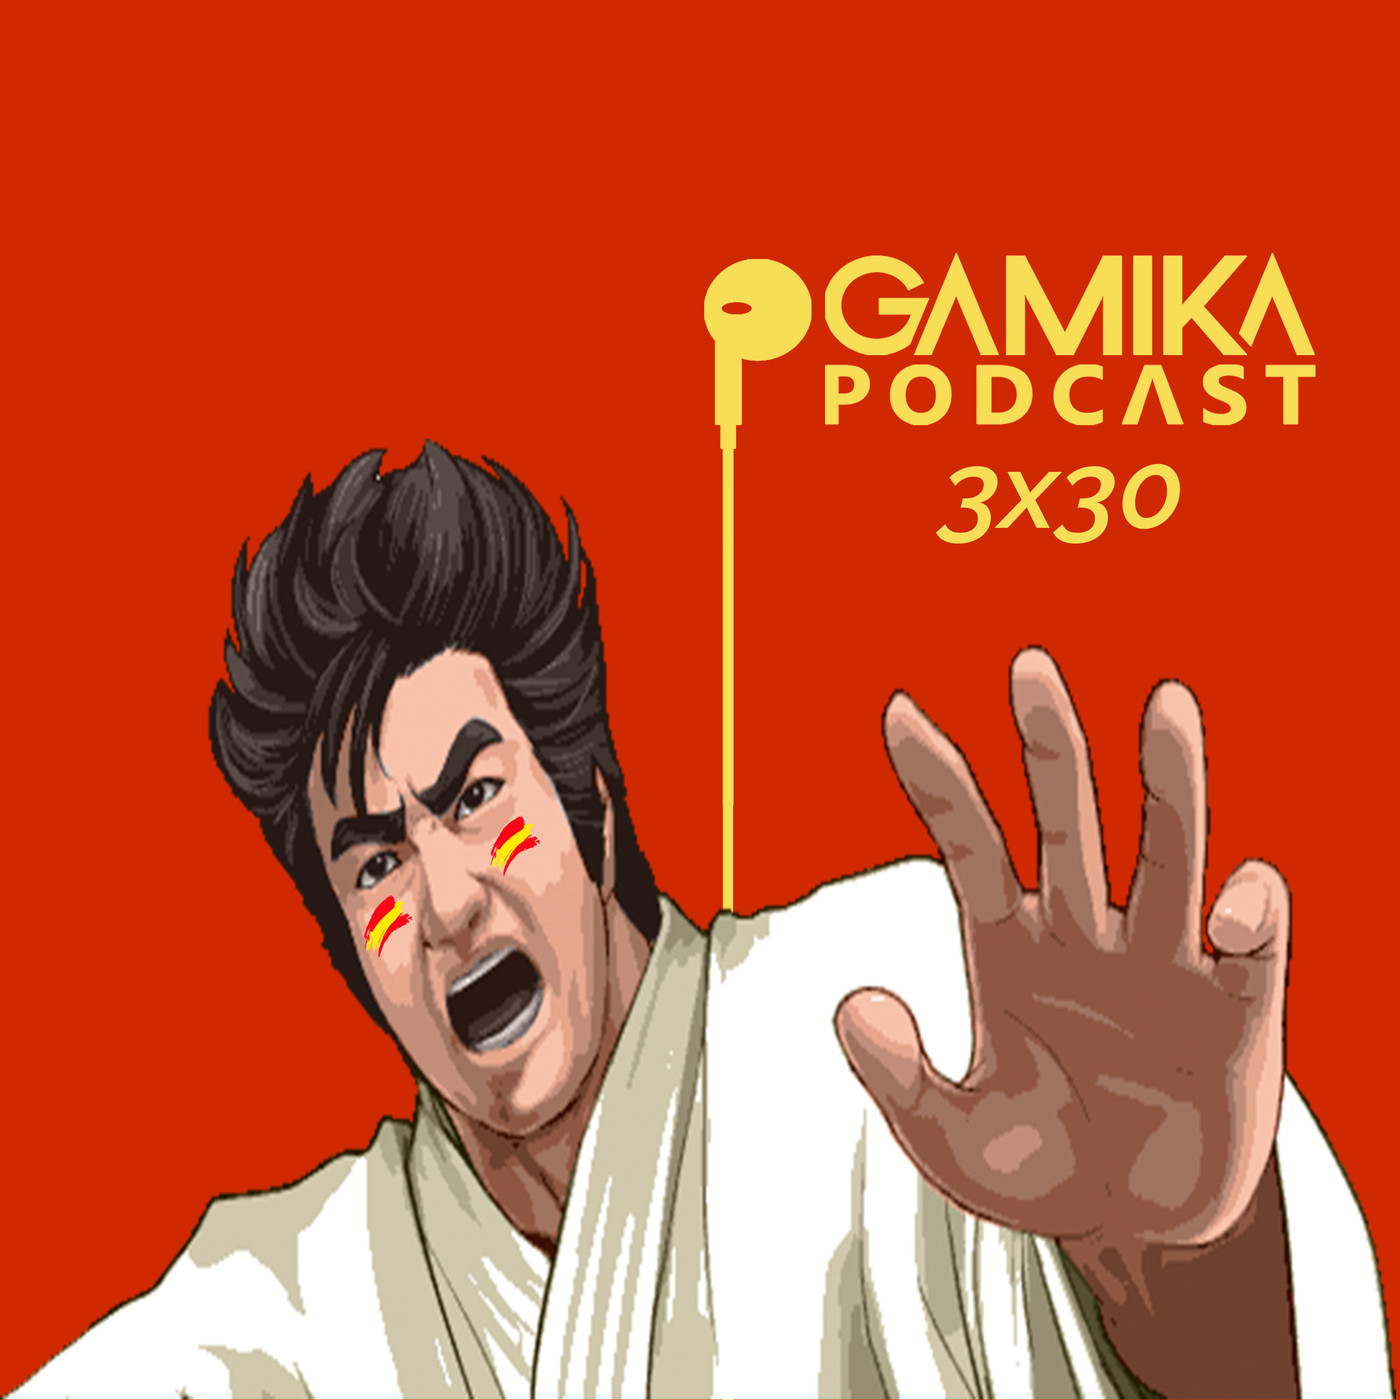 Gamika Podcast 3x30: Segata el del bombo